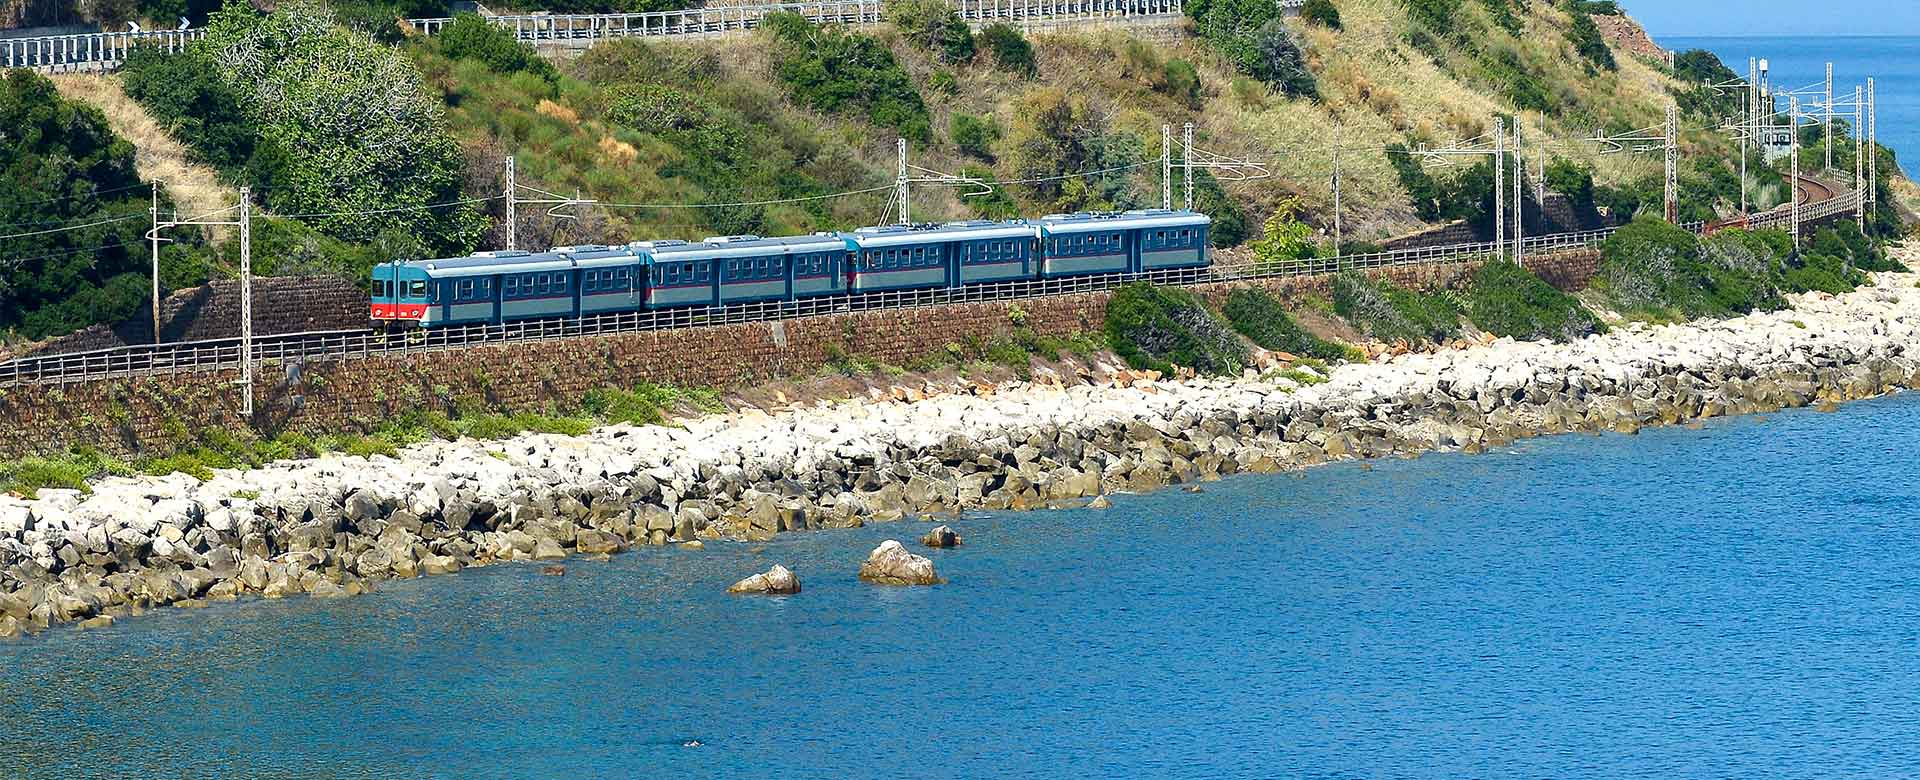 Un treno storico percorre la costa tirrenica a poca distanza da Tusa (Messina)